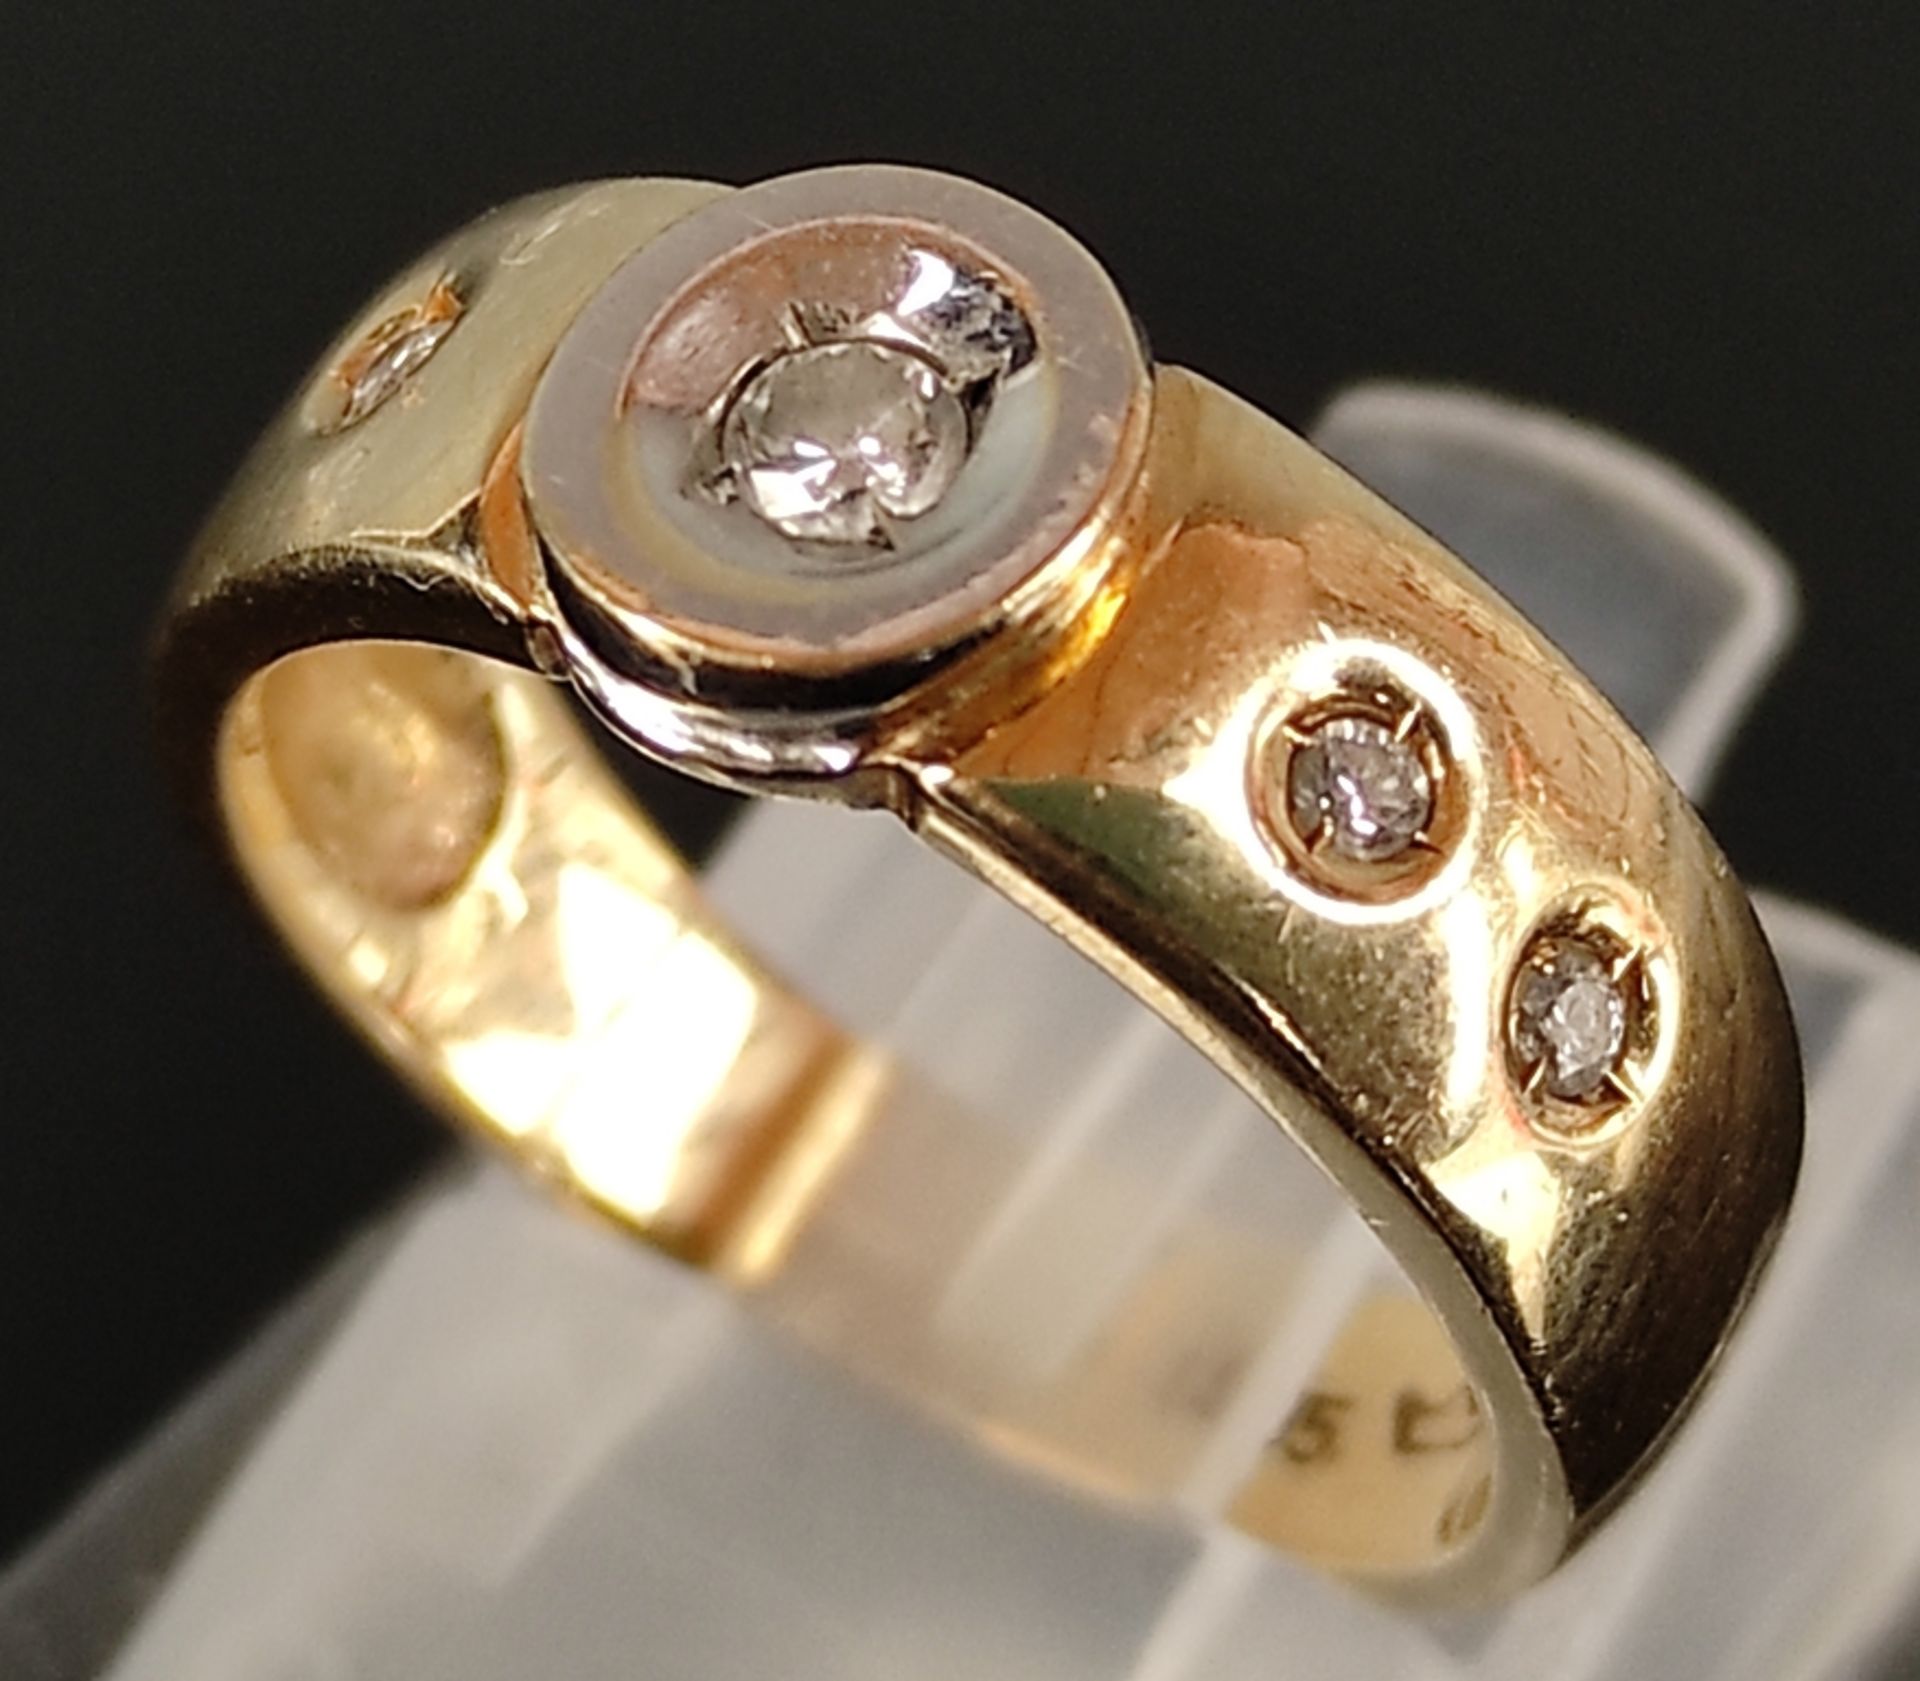 Brillant-Ring, mit 5 kleinen Brillanten, 585/14K Gelb- und Weißgold, 4,2g, Ringgröße 51 - Bild 3 aus 4